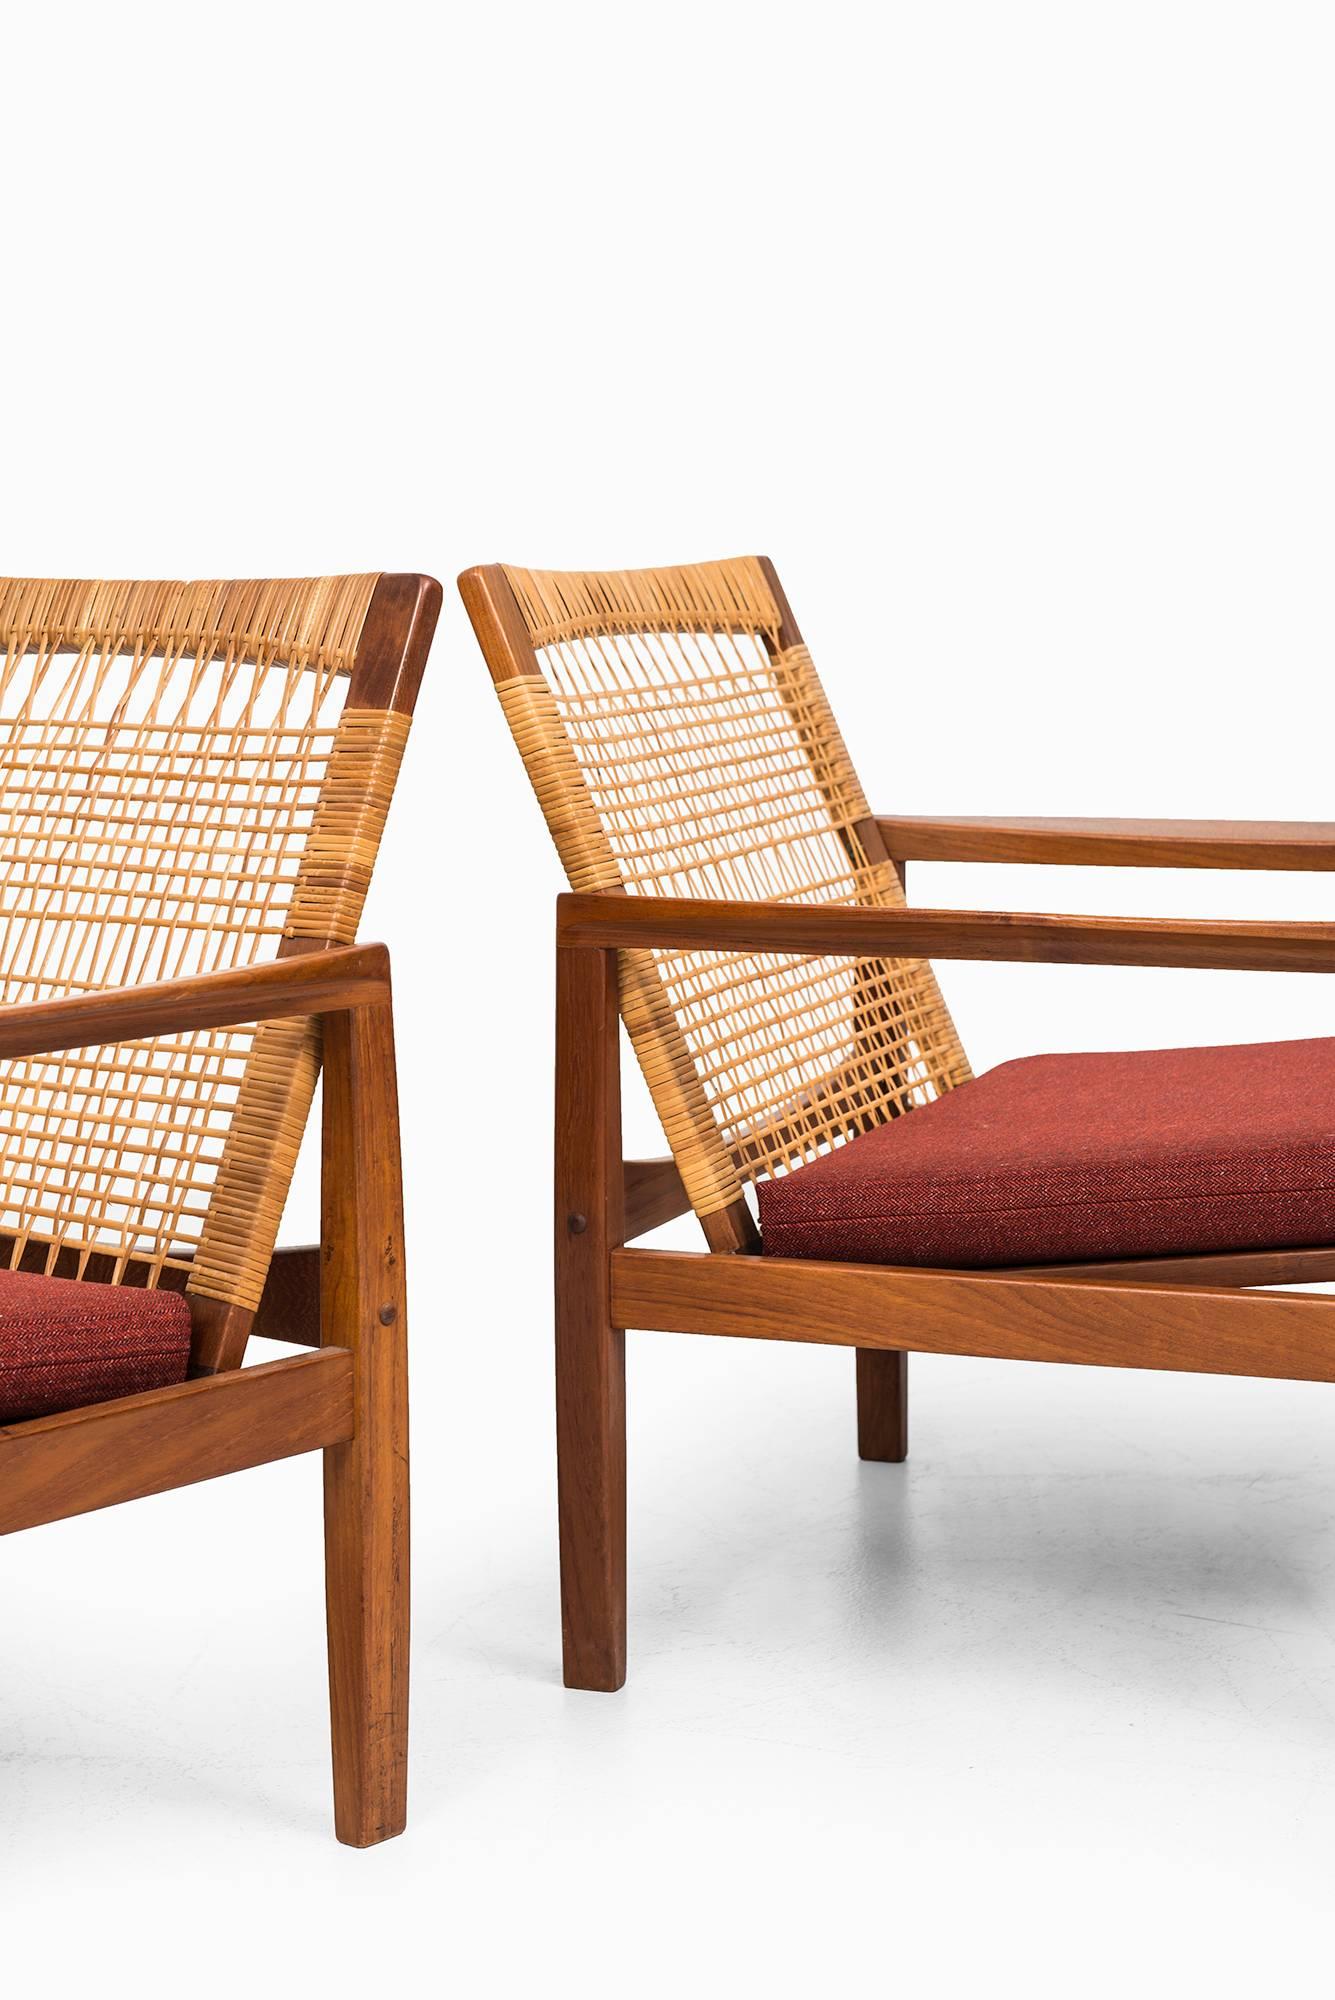 Danish Hans Olsen Easy Chairs Model 519 by Juul Kristensen in Denmark